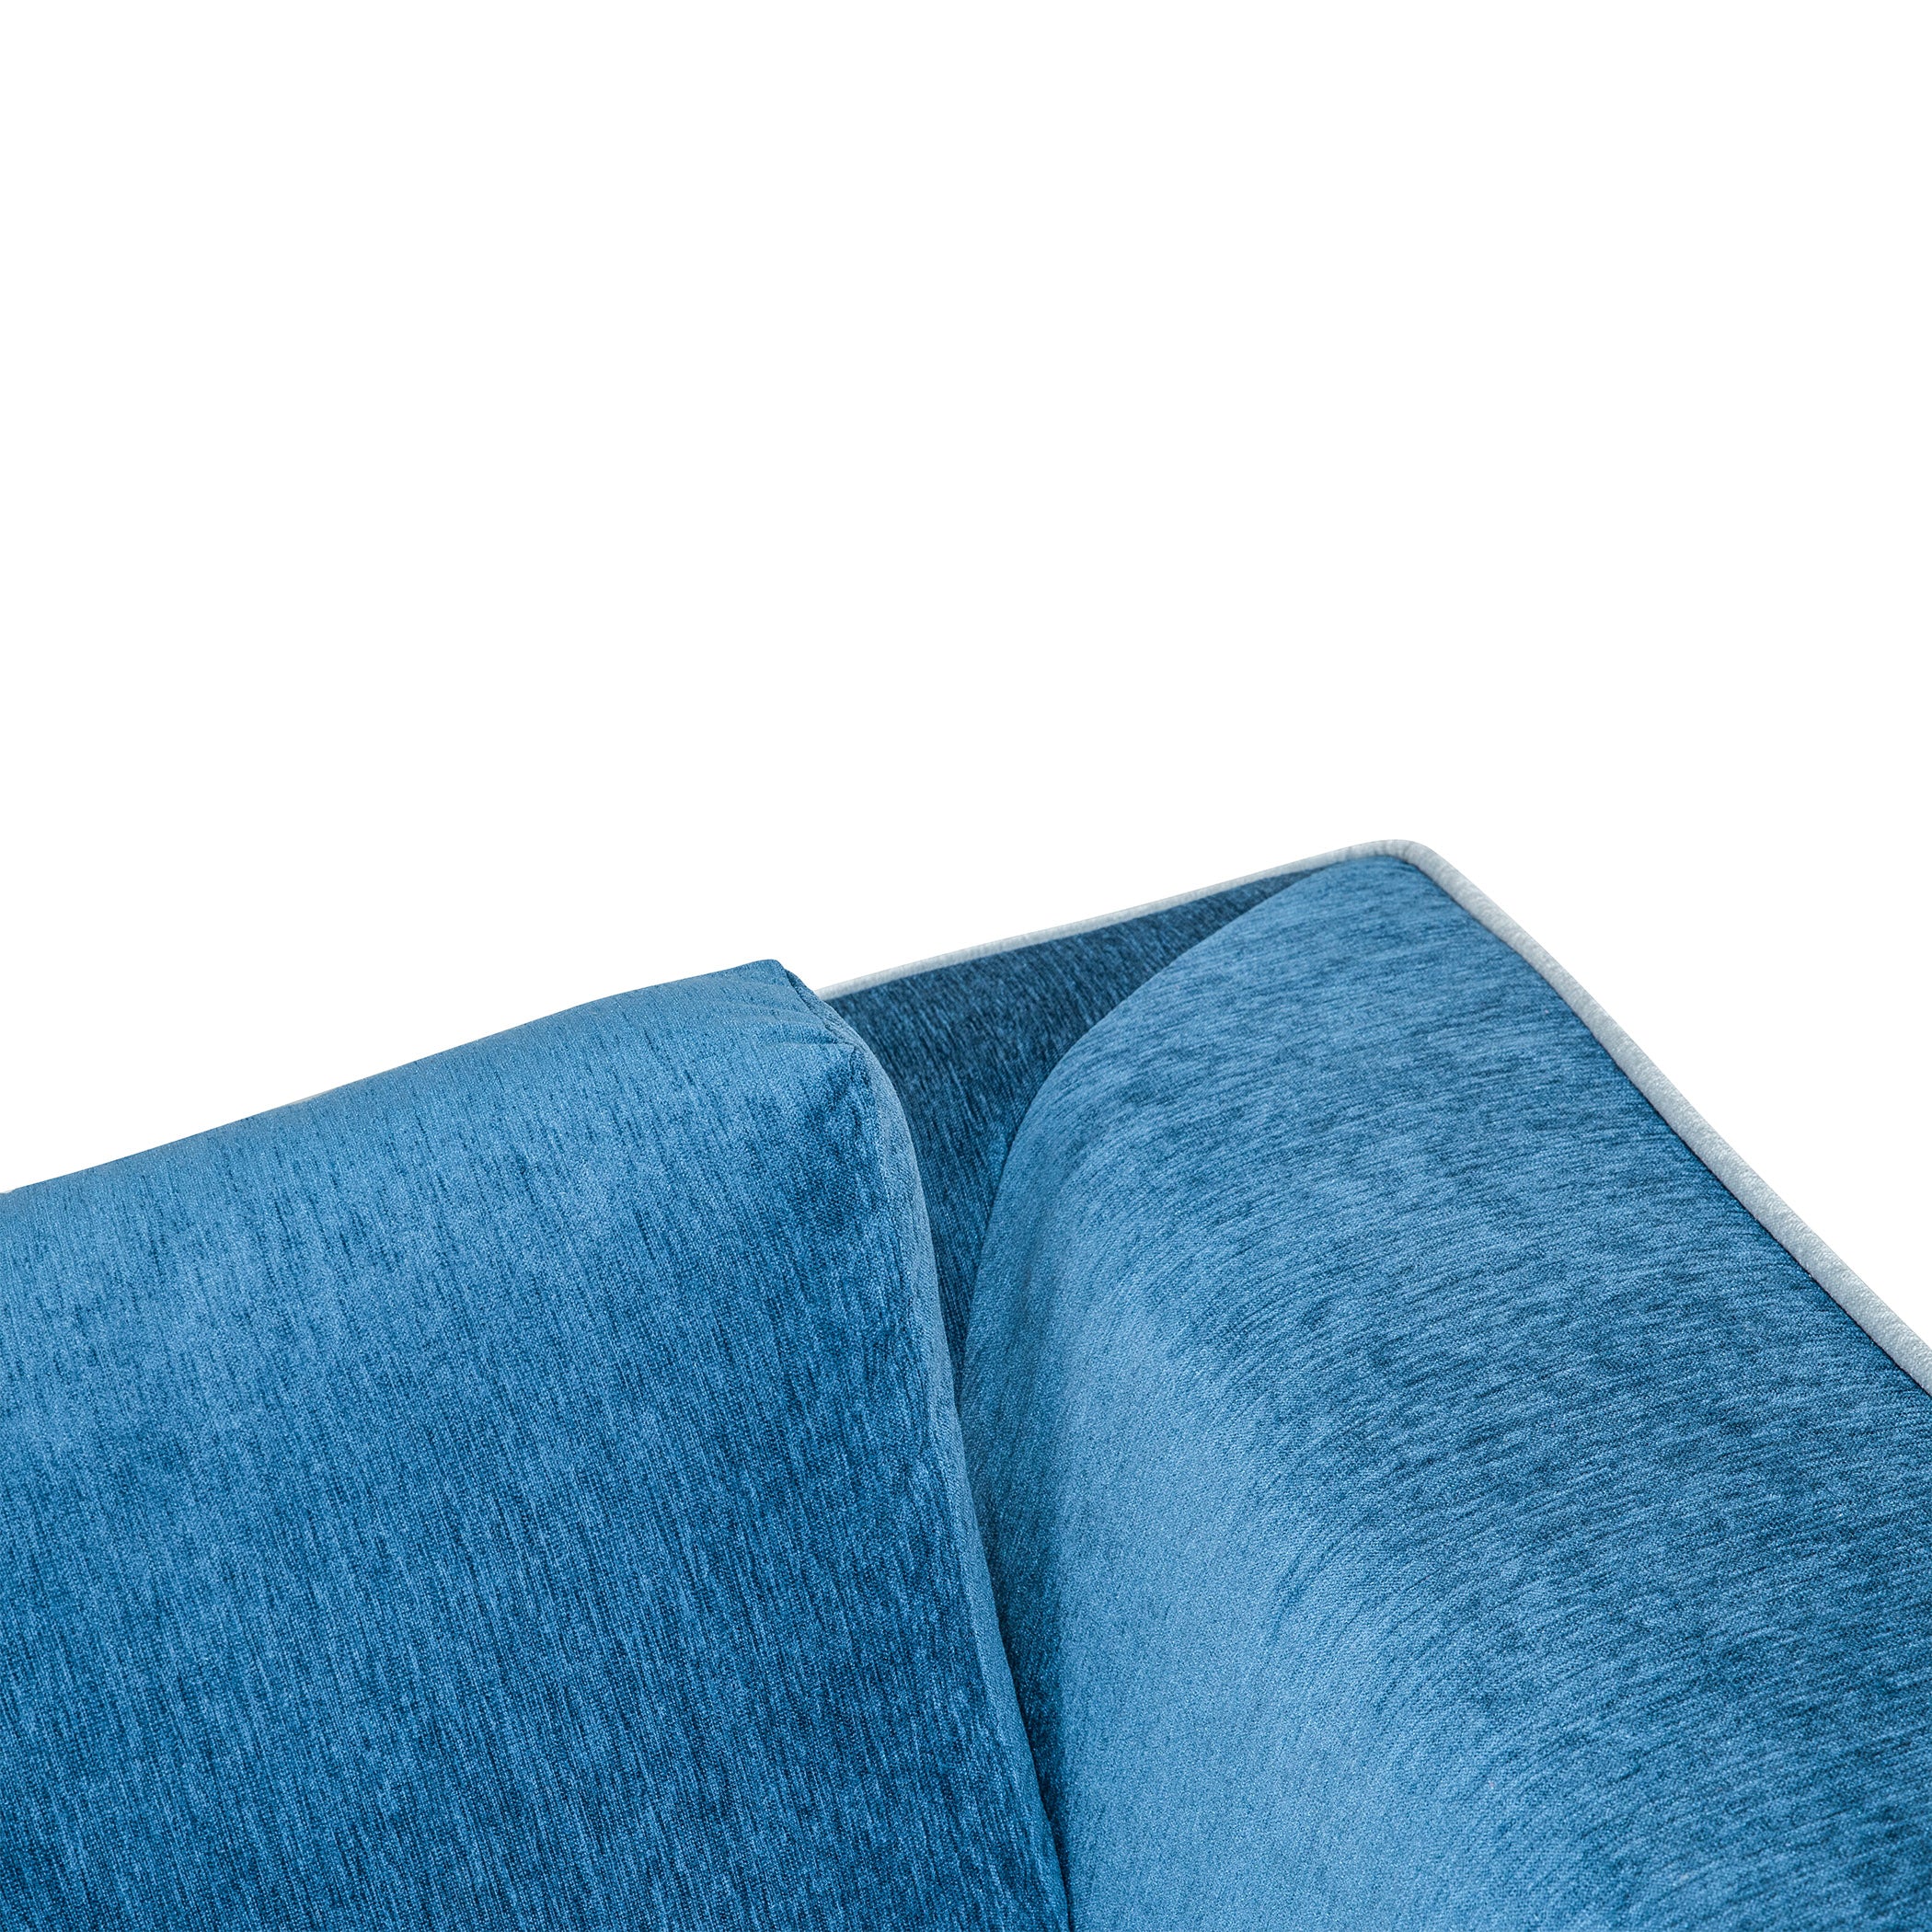 NewYork BlueTorquoise 2S Sofa by Zorin Zorin